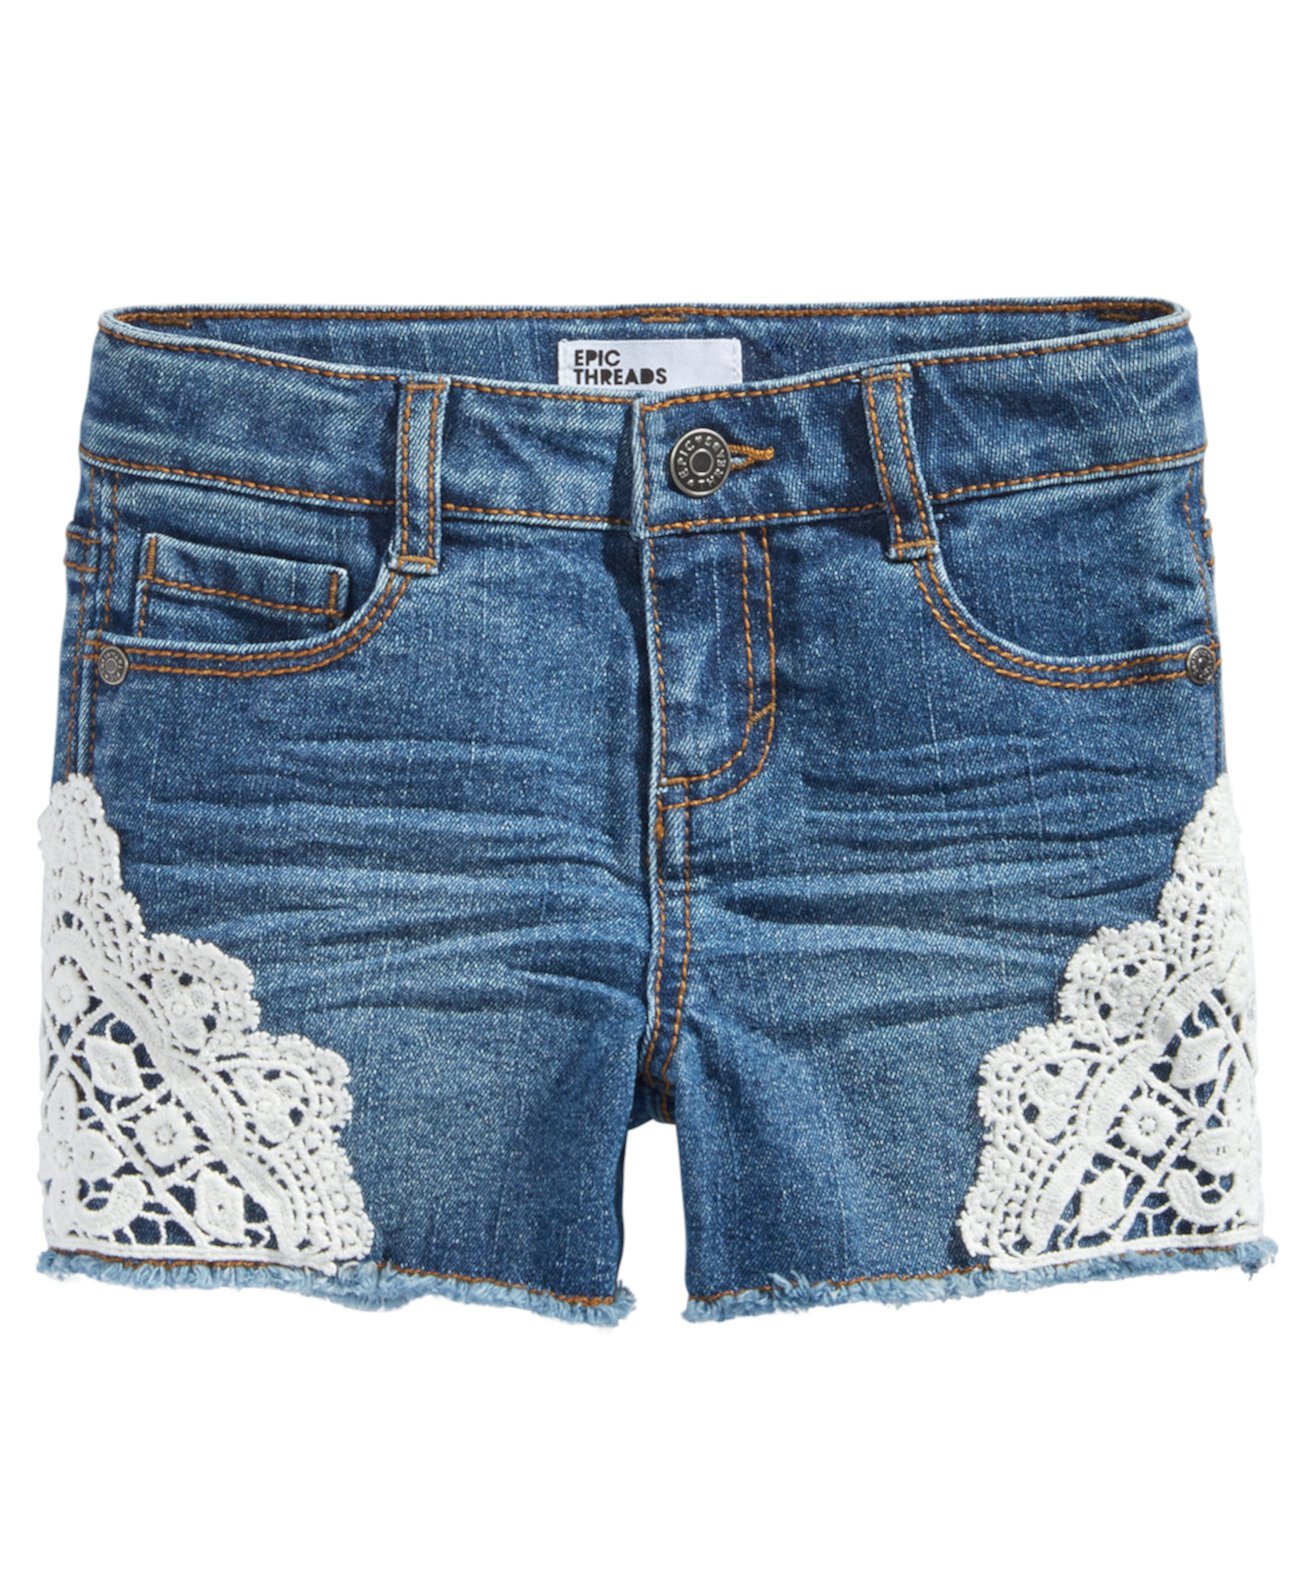 Маленькие джинсовые шорты из джинсовой ткани, созданные для Macy's Epic Threads